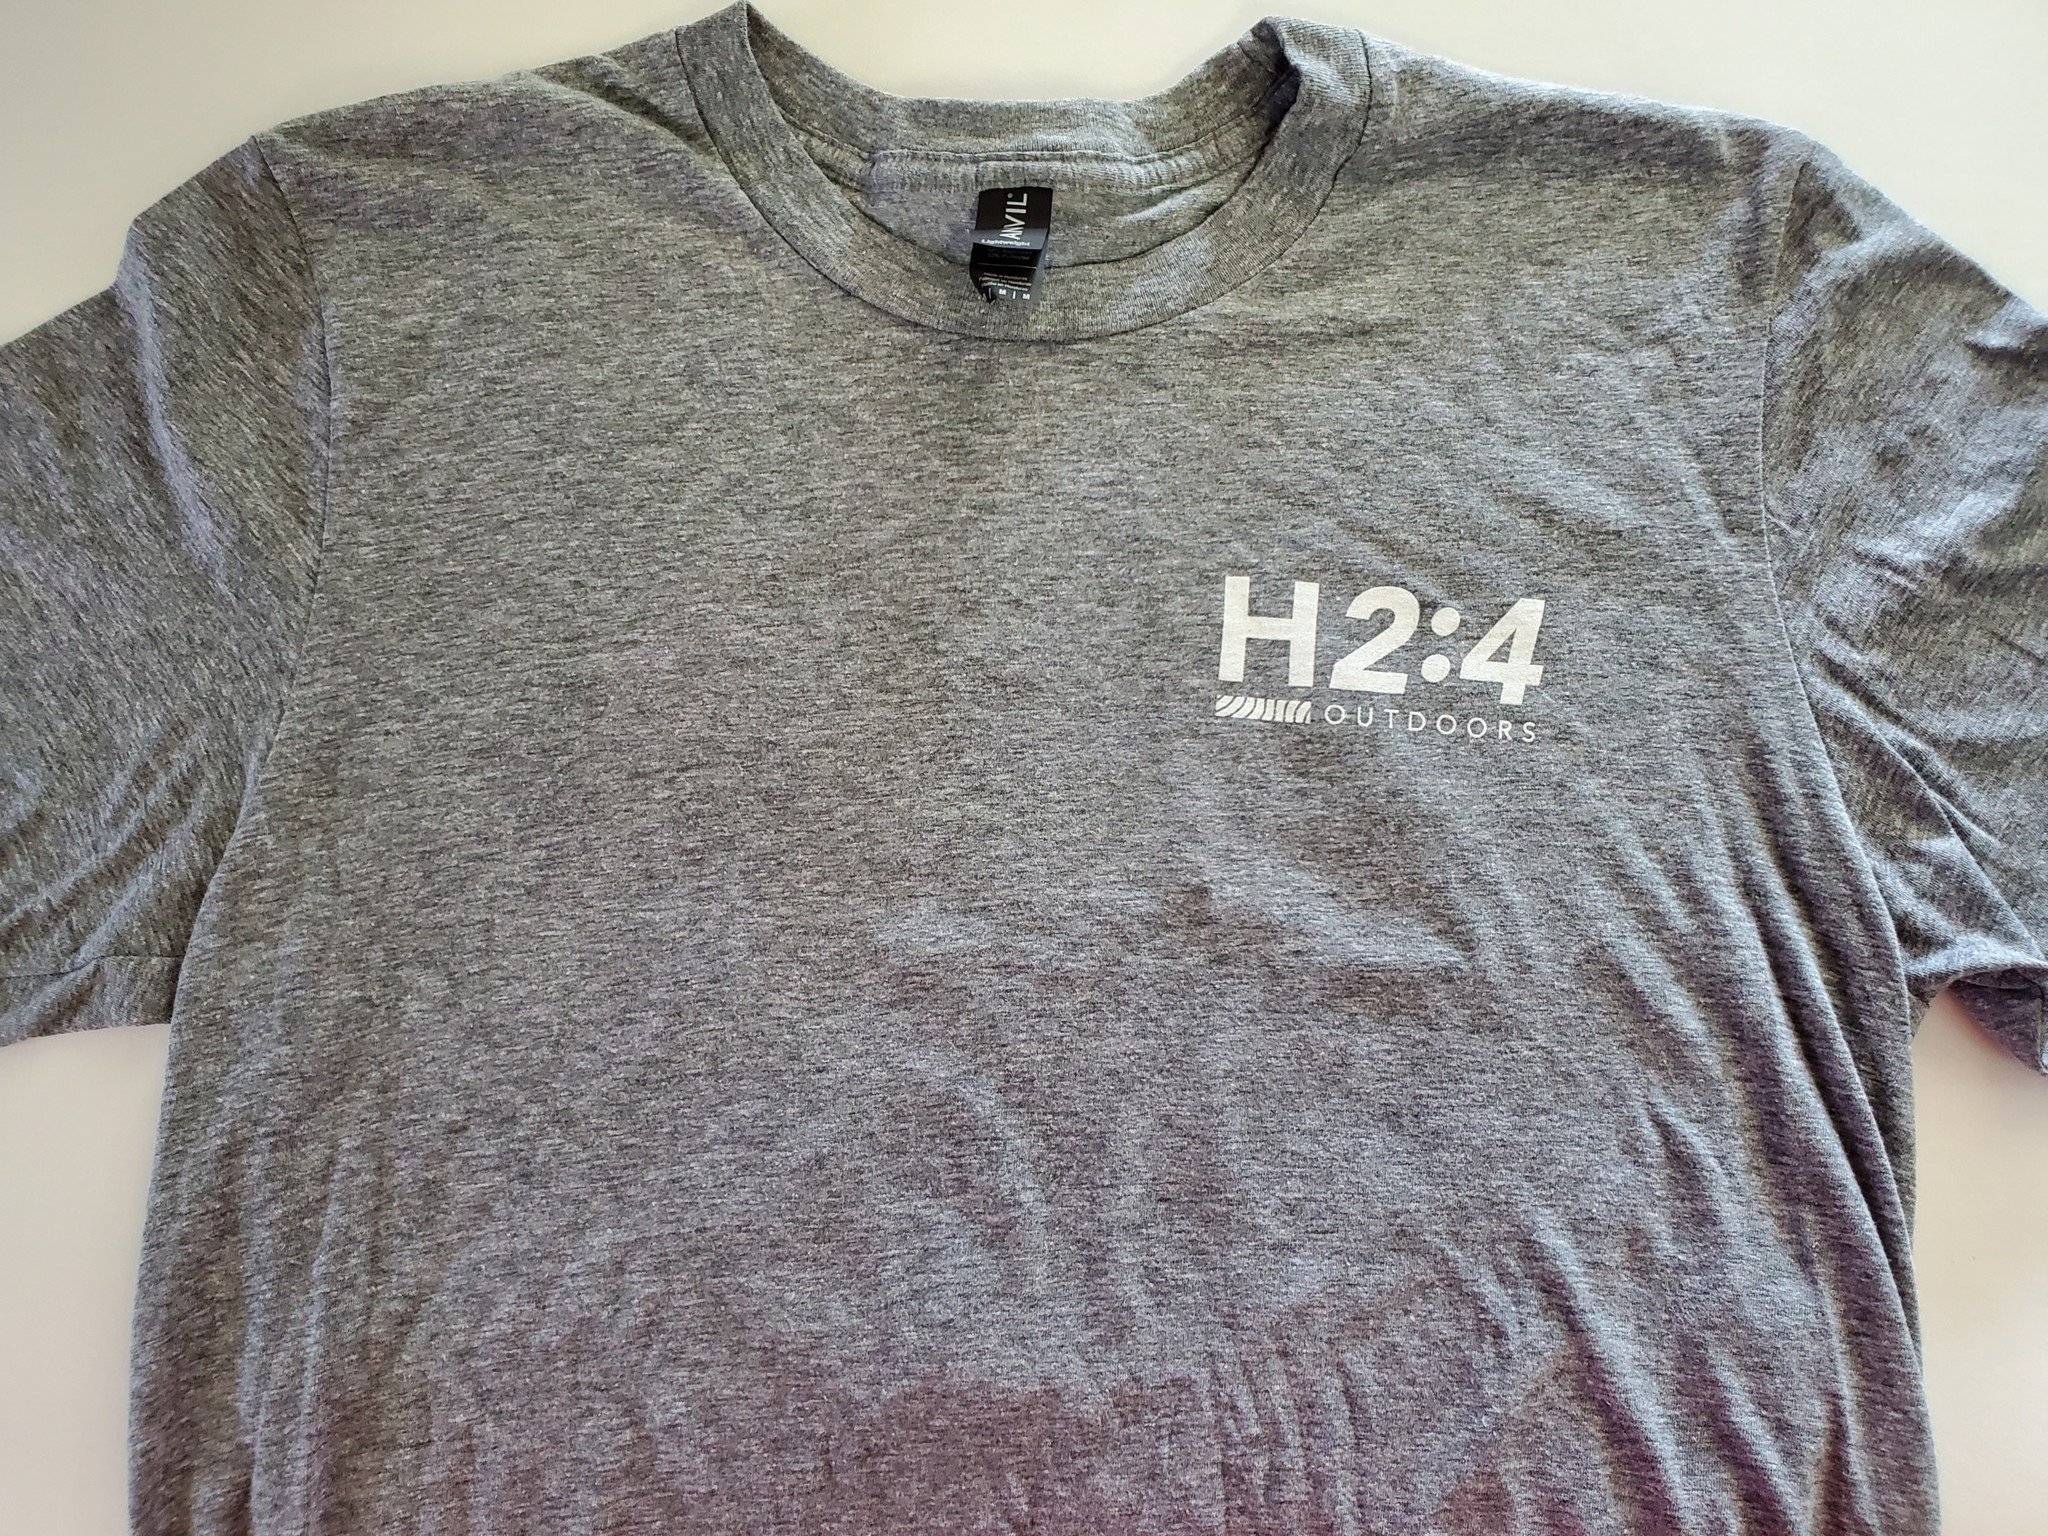 H2:4 t-shirt - H2:4 Outdoors